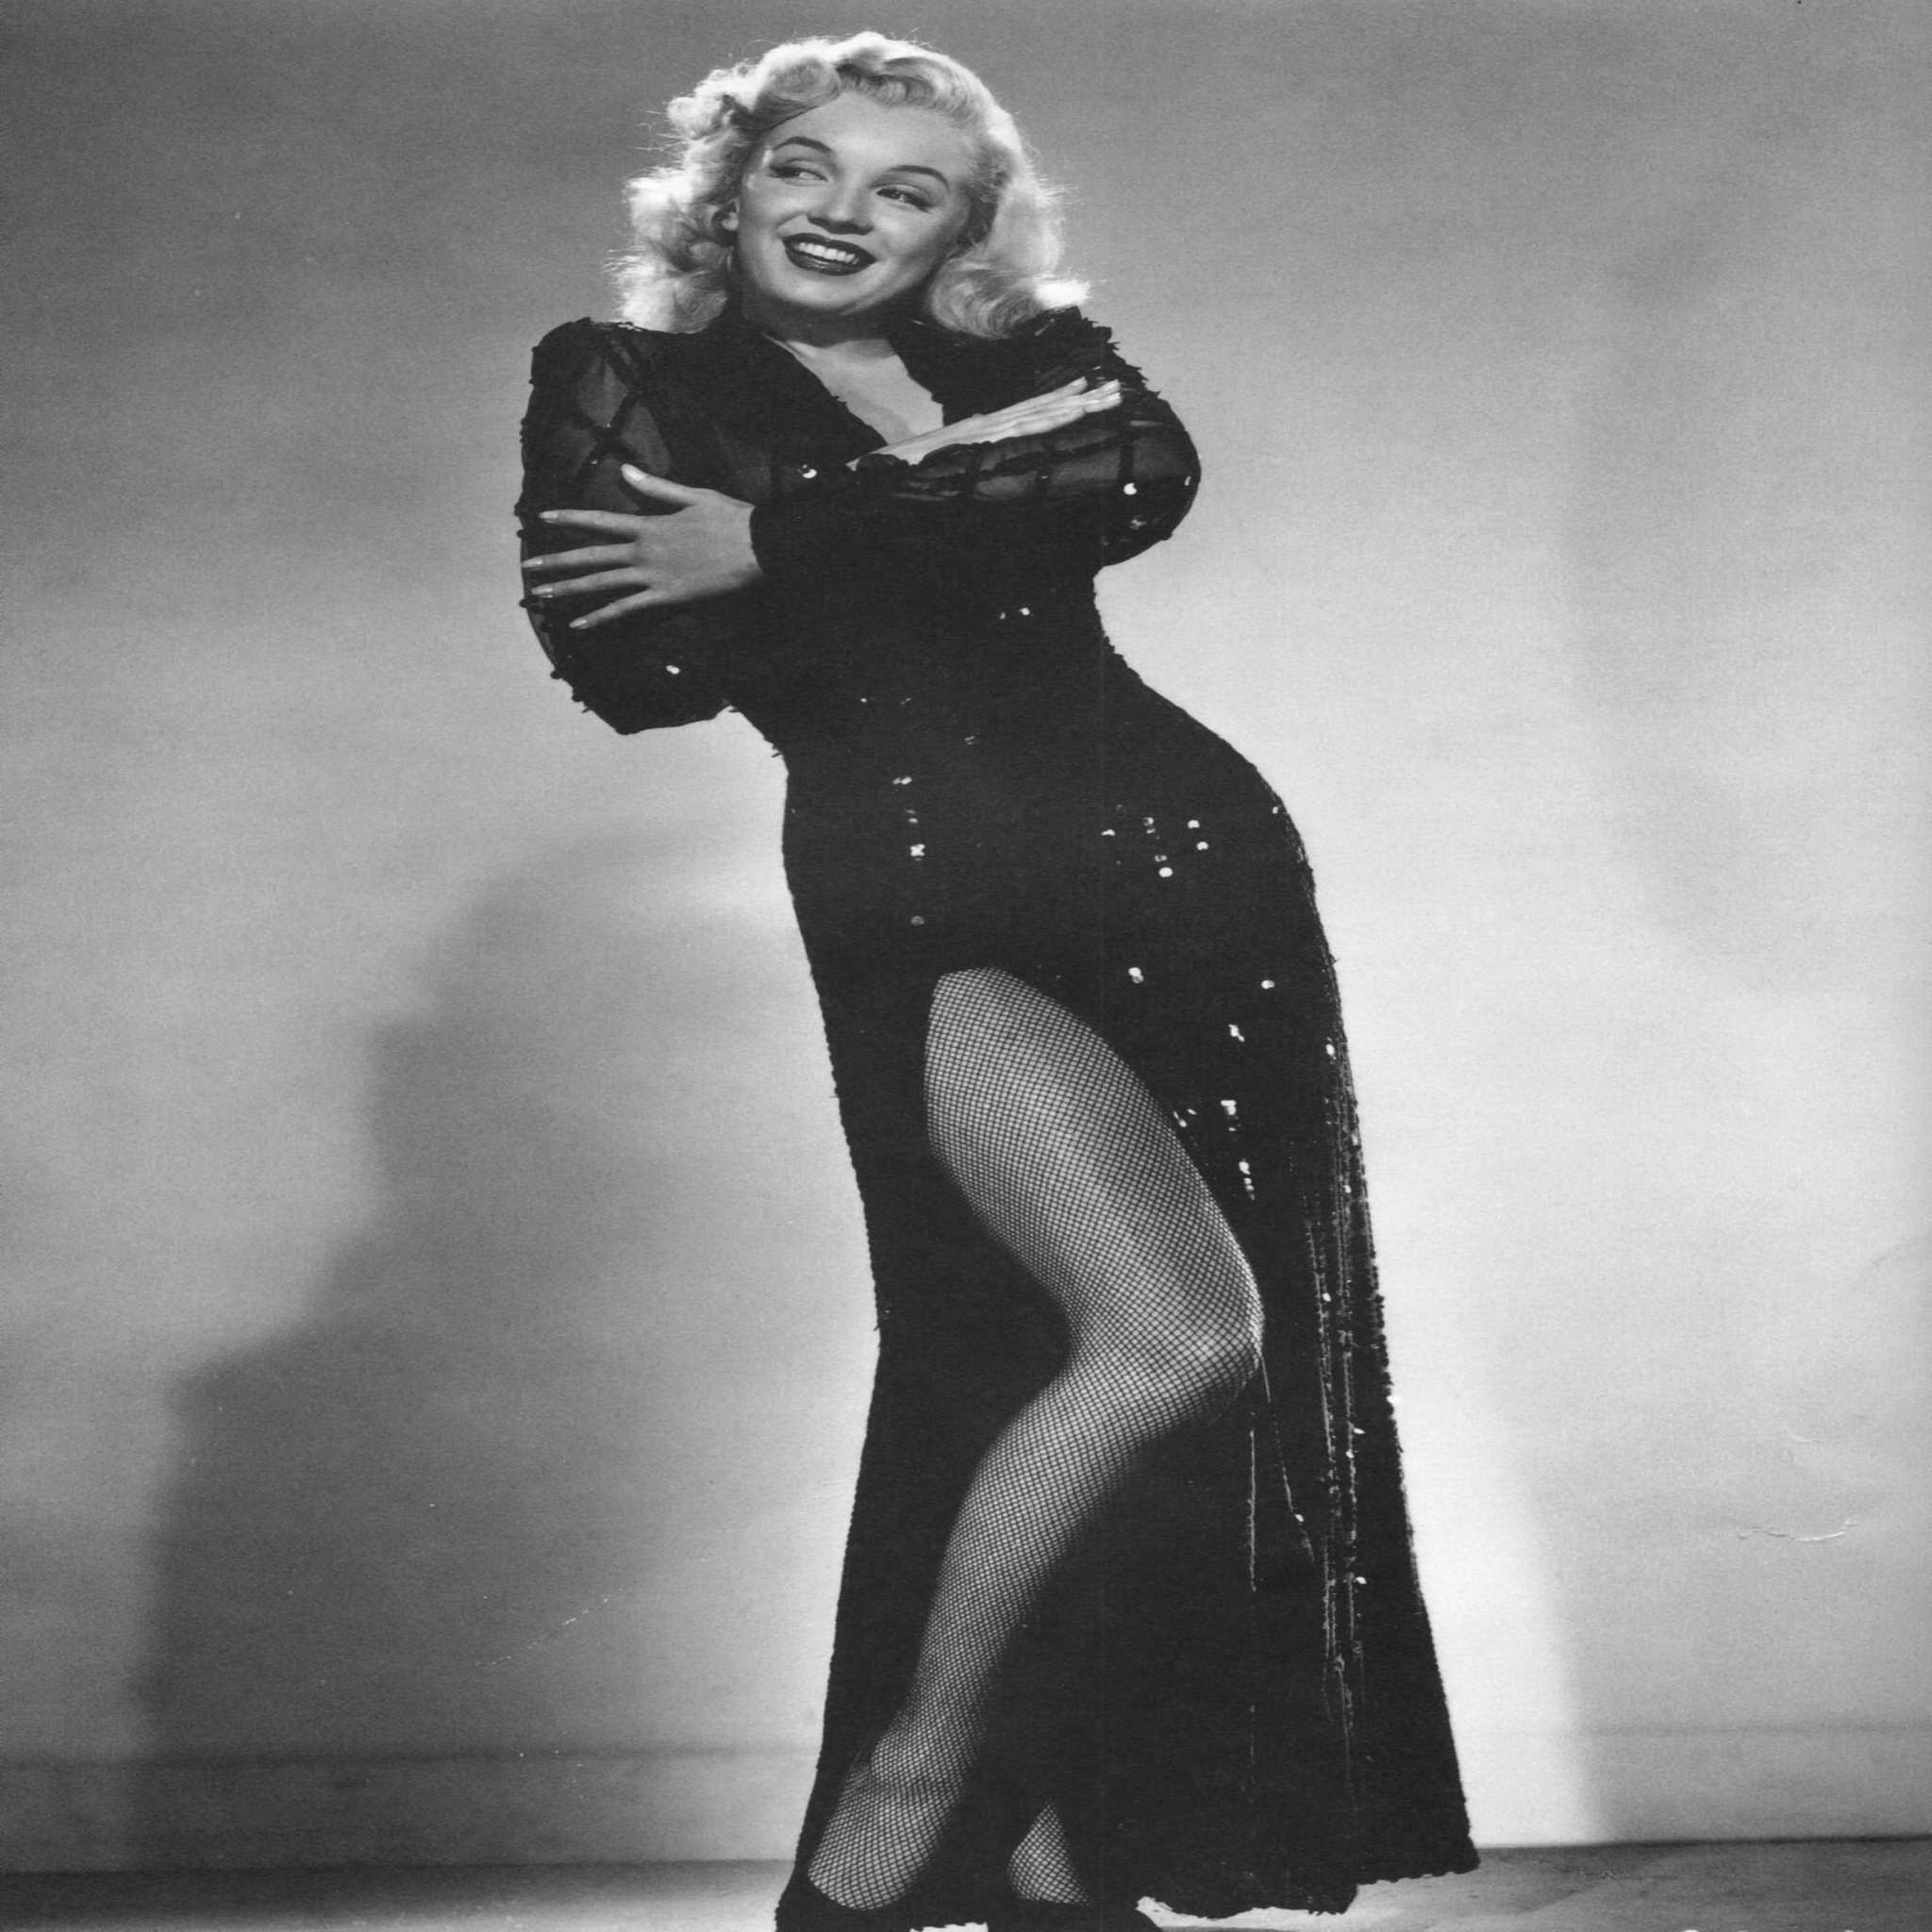 [41+] Marilyn Monroe with Guns Wallpaper | WallpaperSafari.com